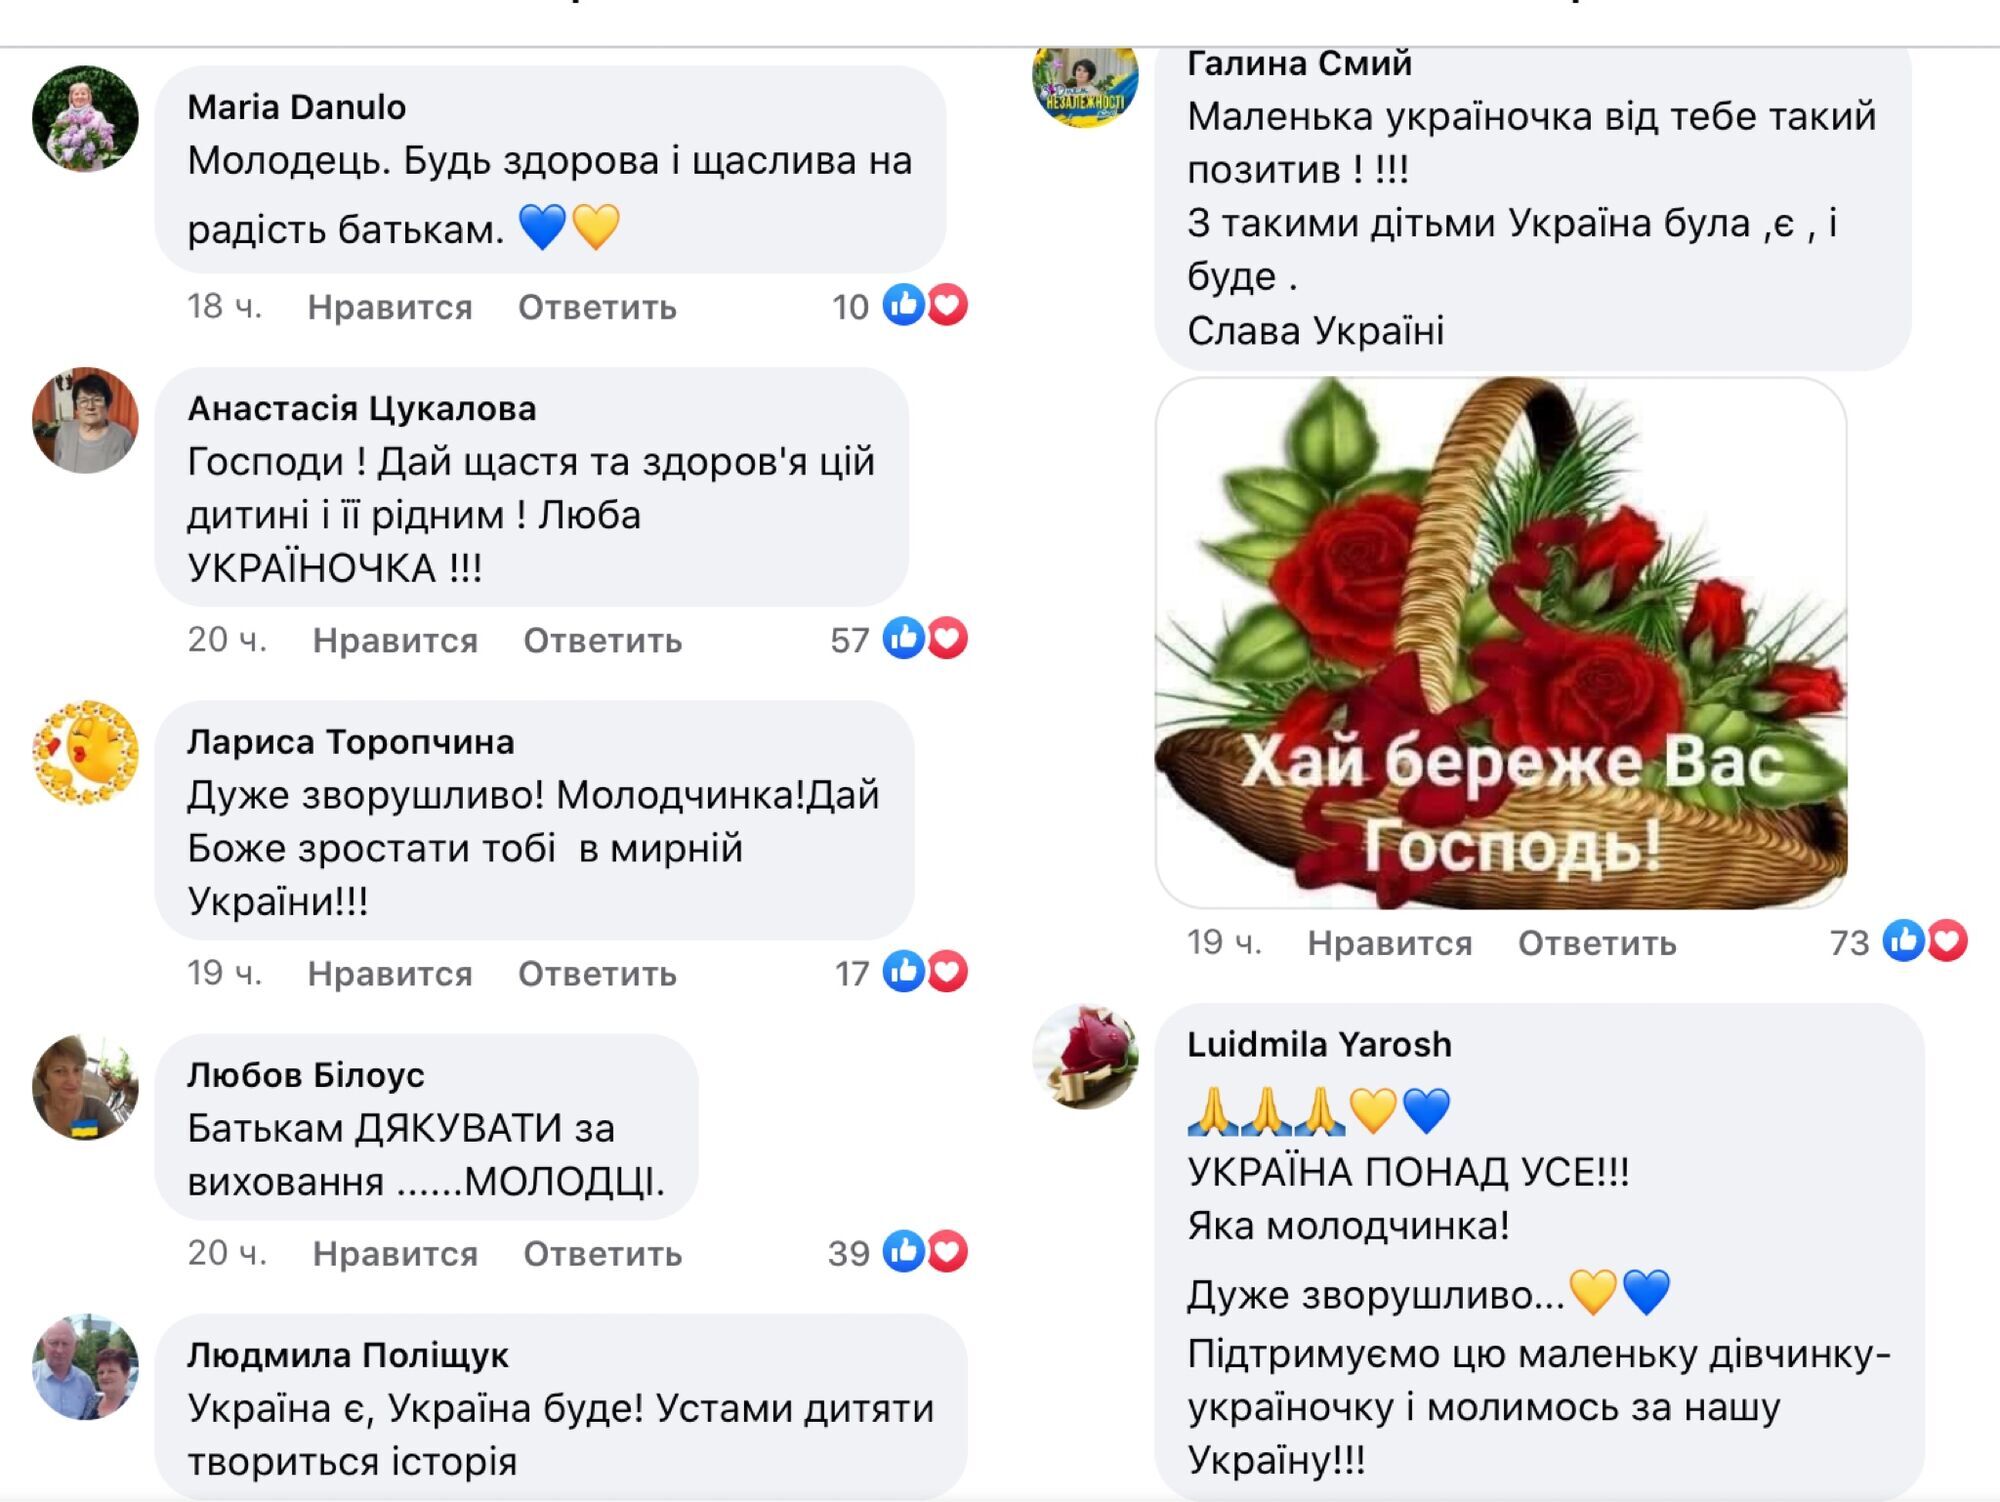 Комментарии под видео с маленькой участницей Марша единства в Одессе